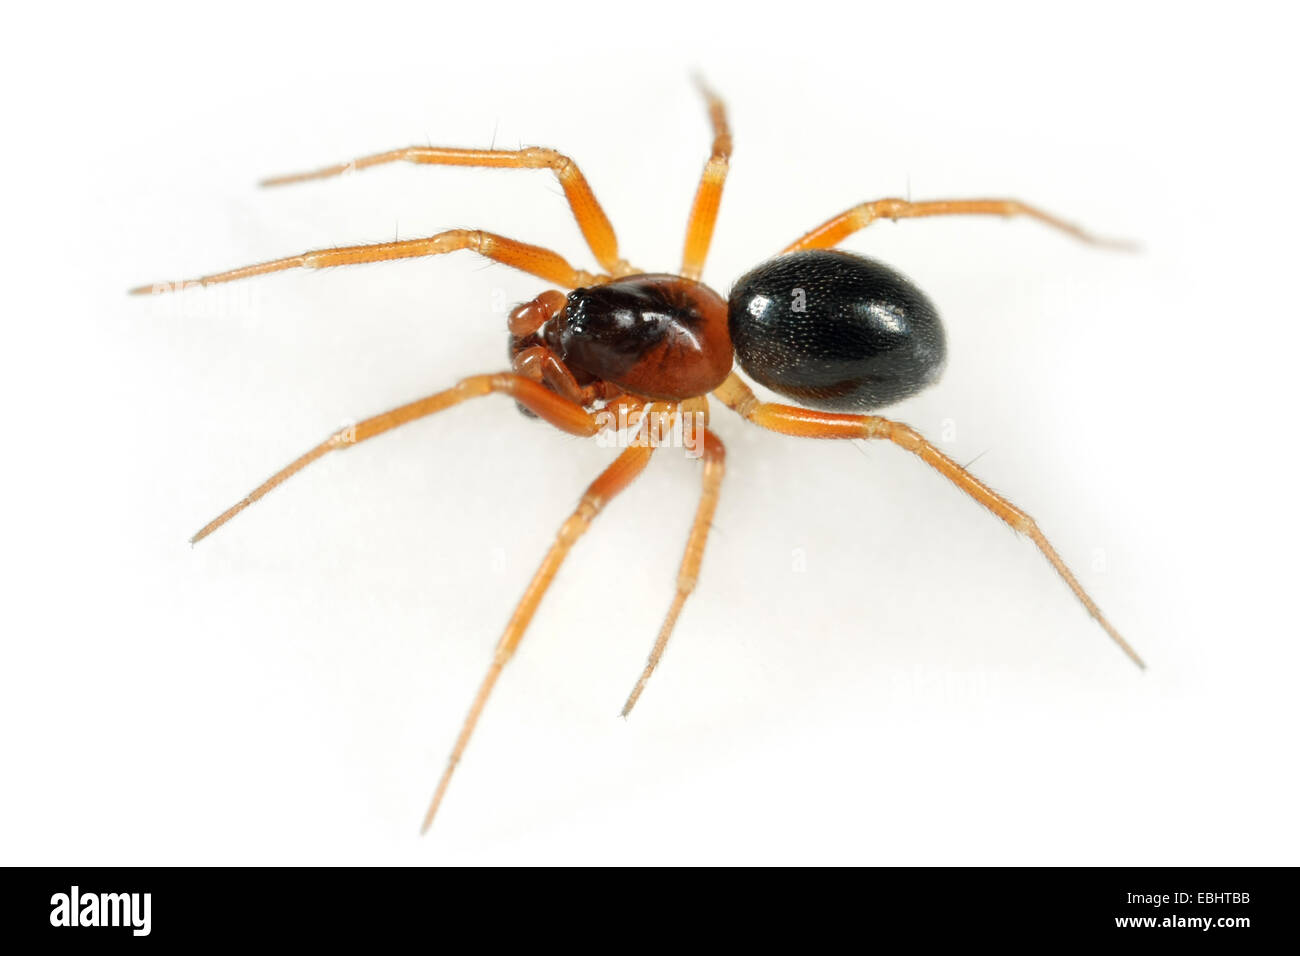 Un homme araignée nain (Gongylidium rufipes) sur fond blanc. Les araignées nains font partie de la famille des Amphinectidae. Banque D'Images